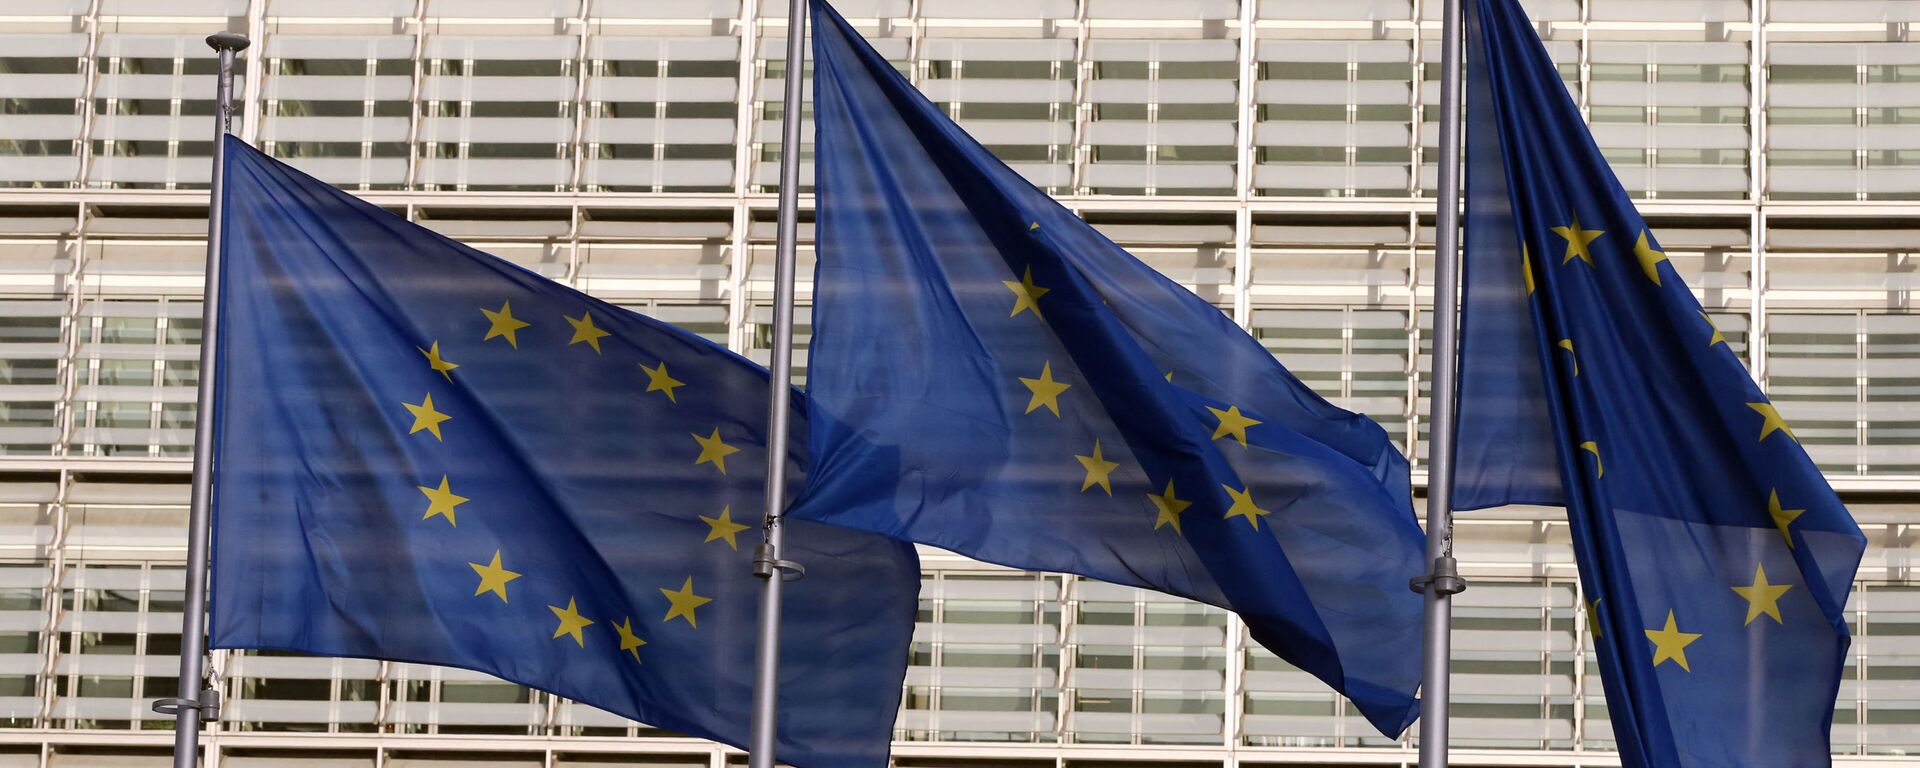 Флаги Европейского союза у штаб-квартиры Европейской комиссии в Брюсселе - Sputnik Литва, 1920, 04.05.2021